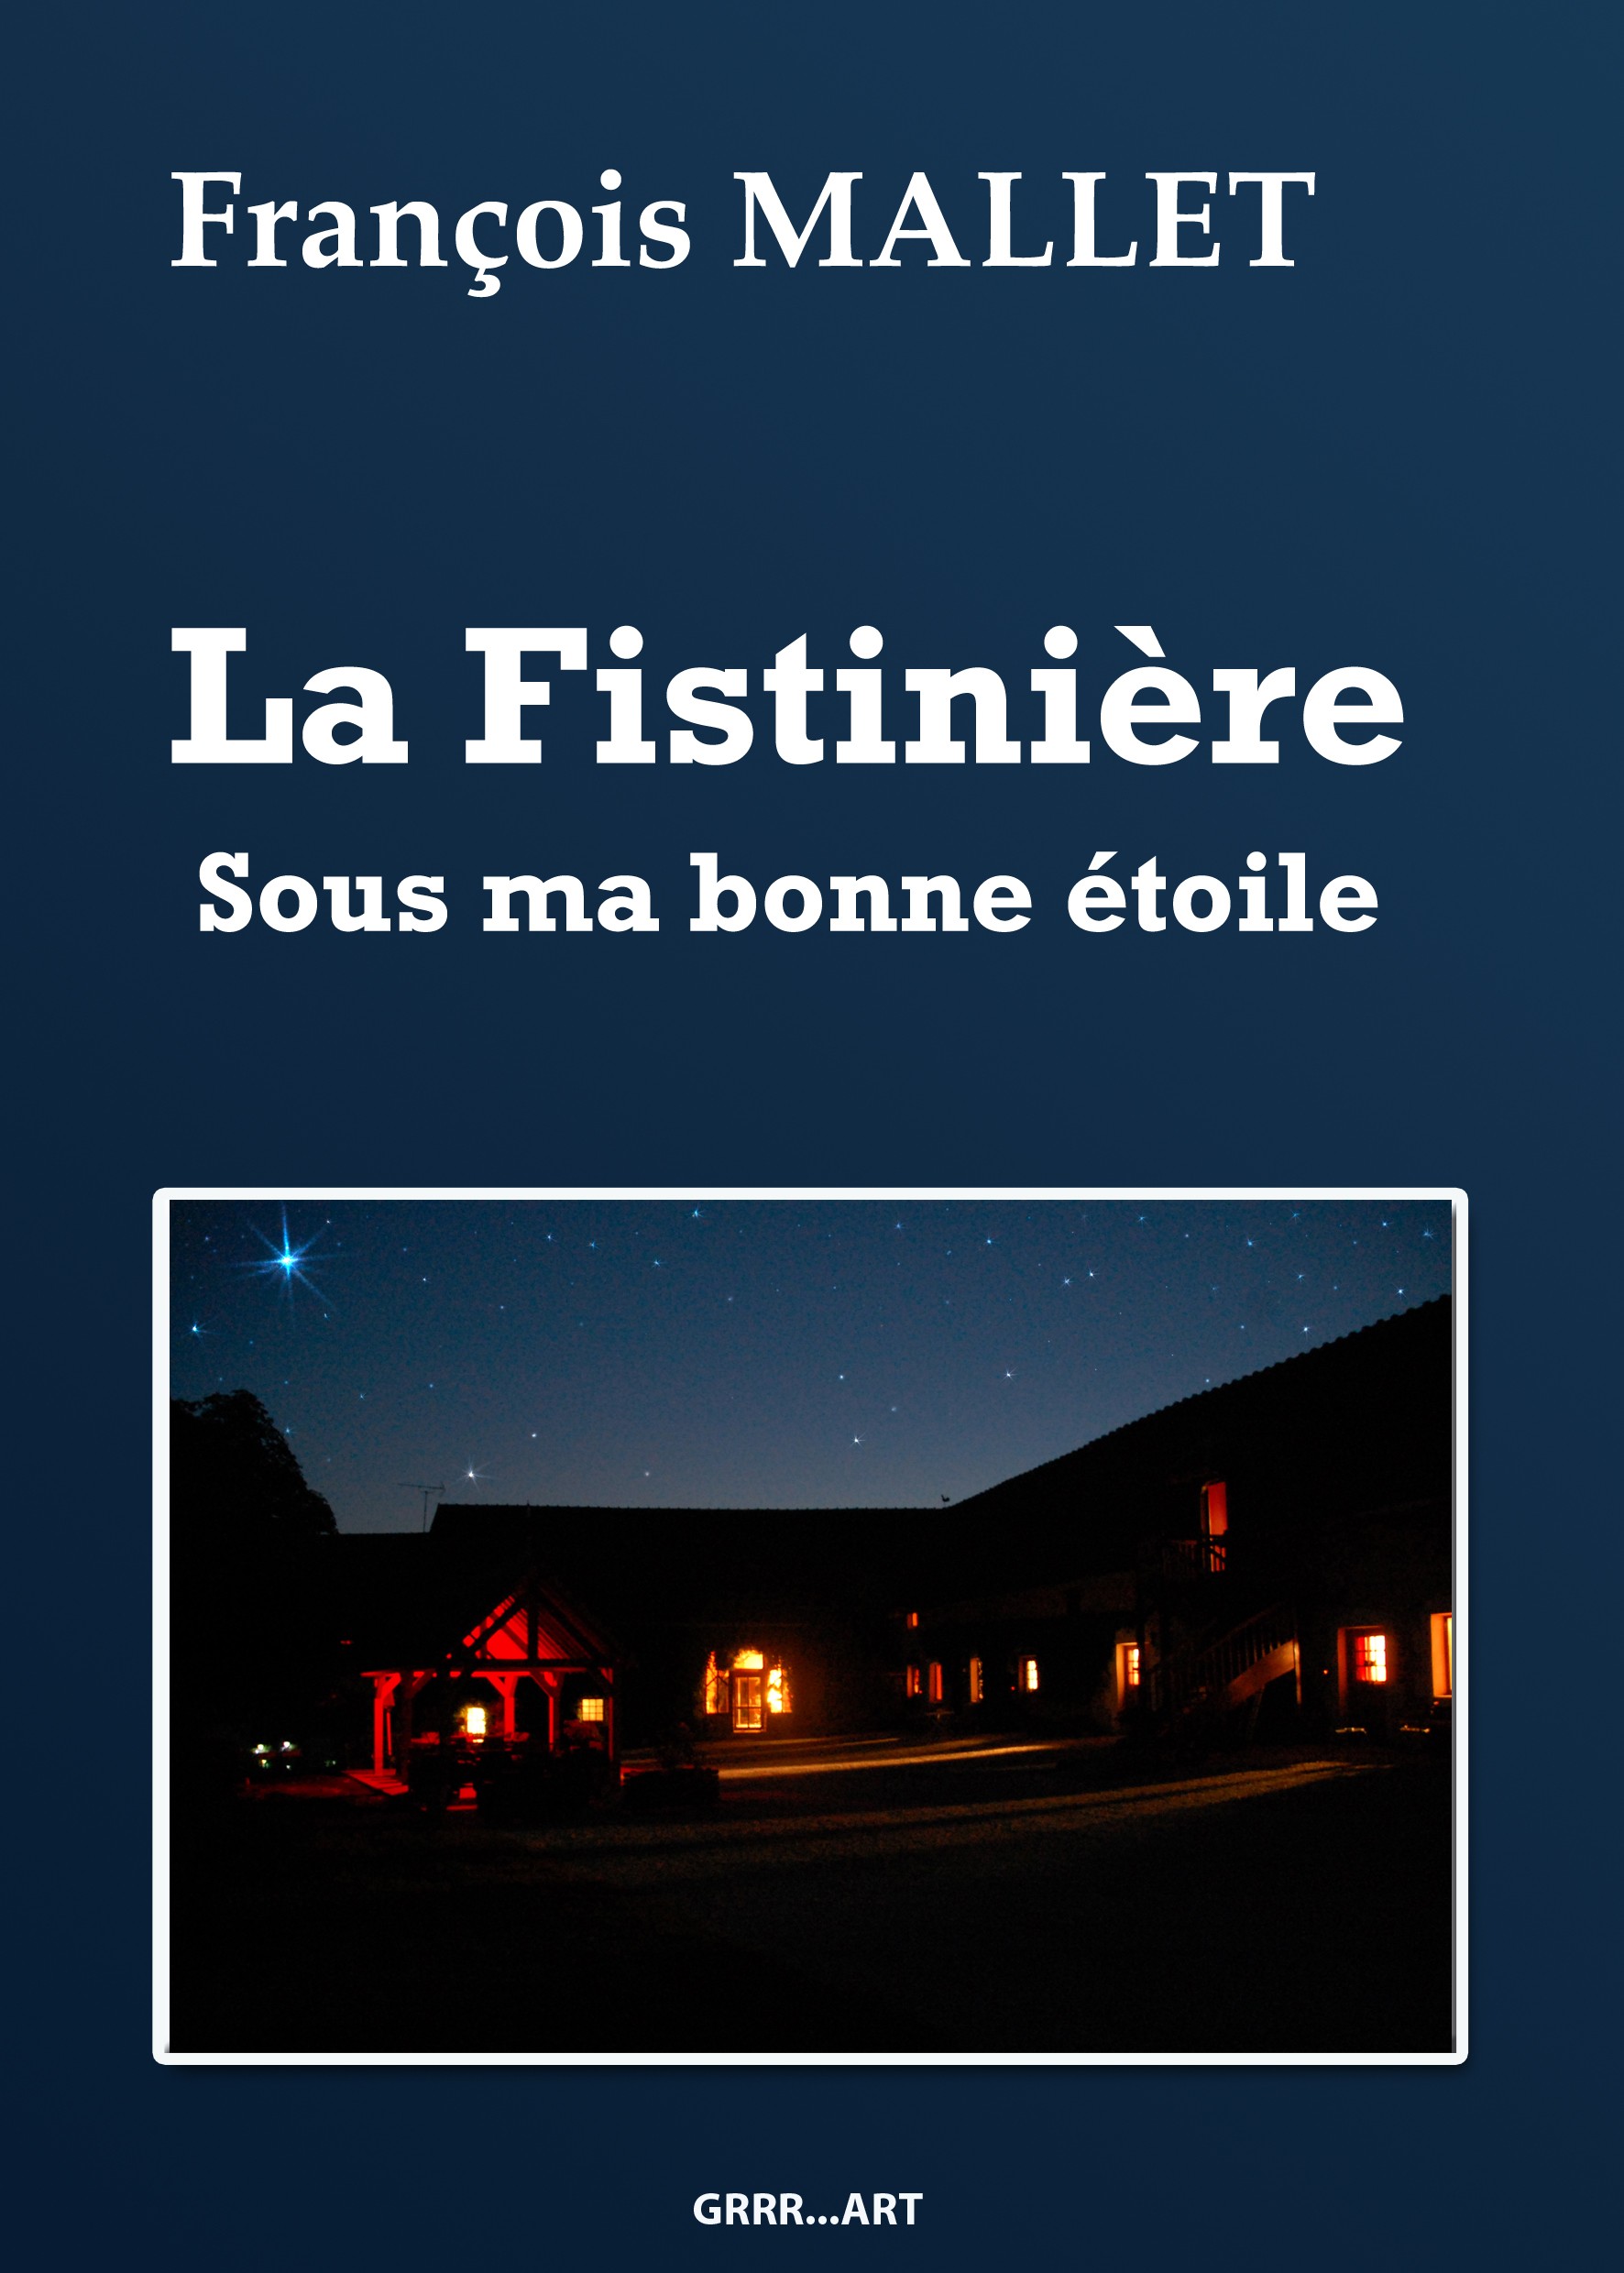 Livre de François Mallet "La Fistinière sous ma bonne étoile" 